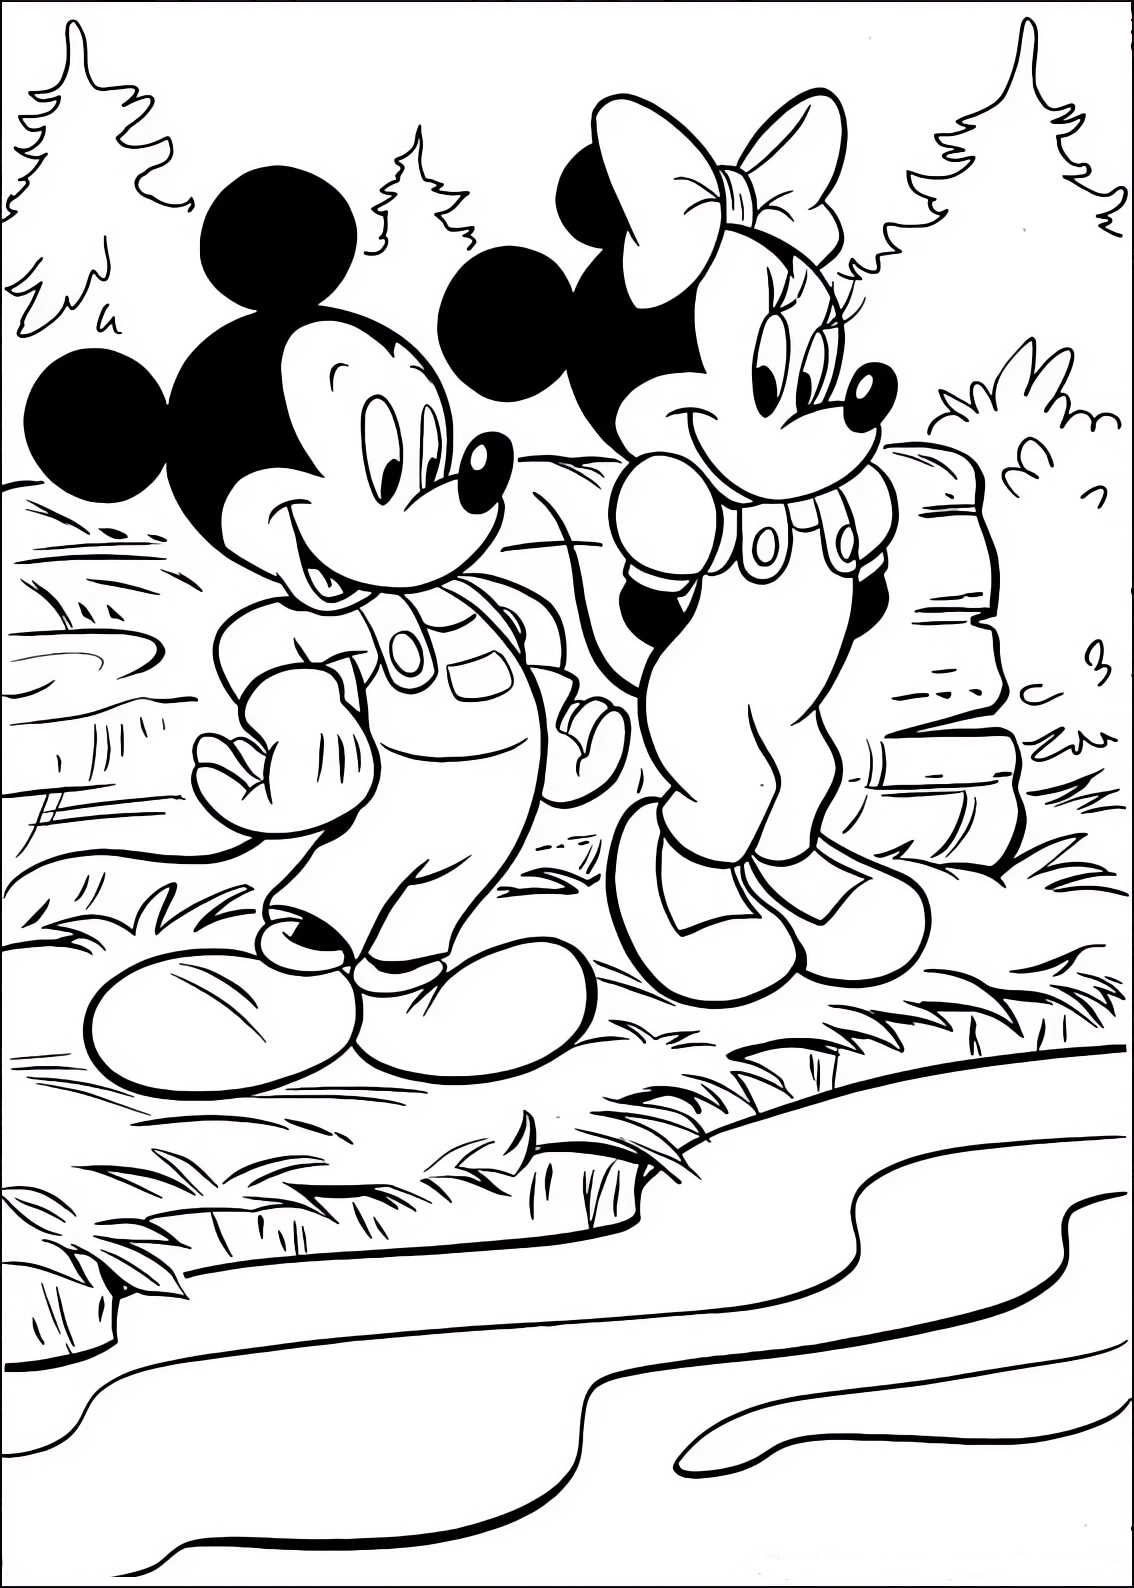 Malvorlage von Minnie und Mickey Mouse am Fluss